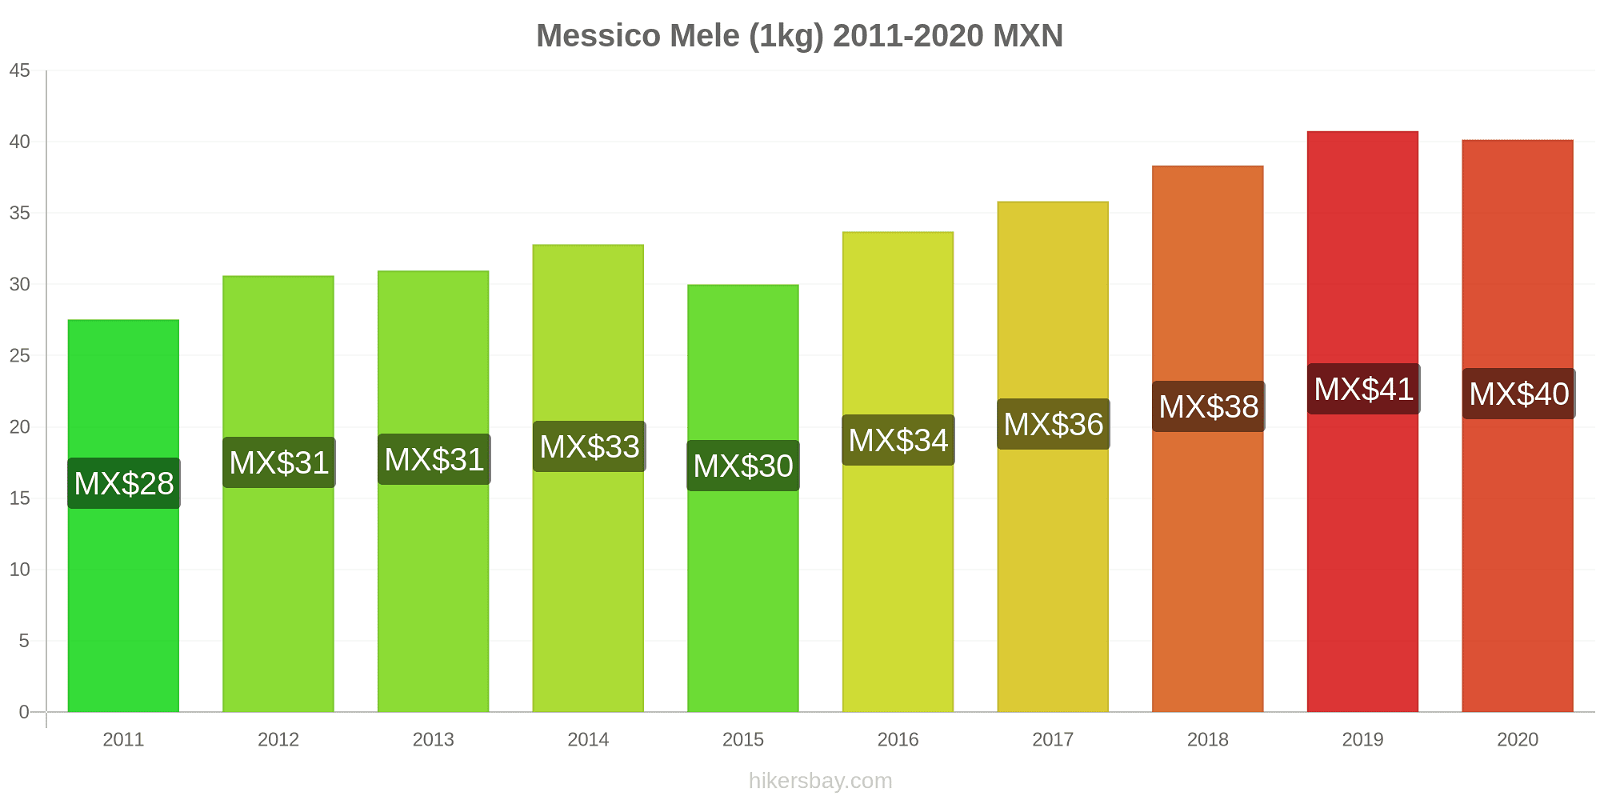 Messico variazioni di prezzo Mele (1kg) hikersbay.com